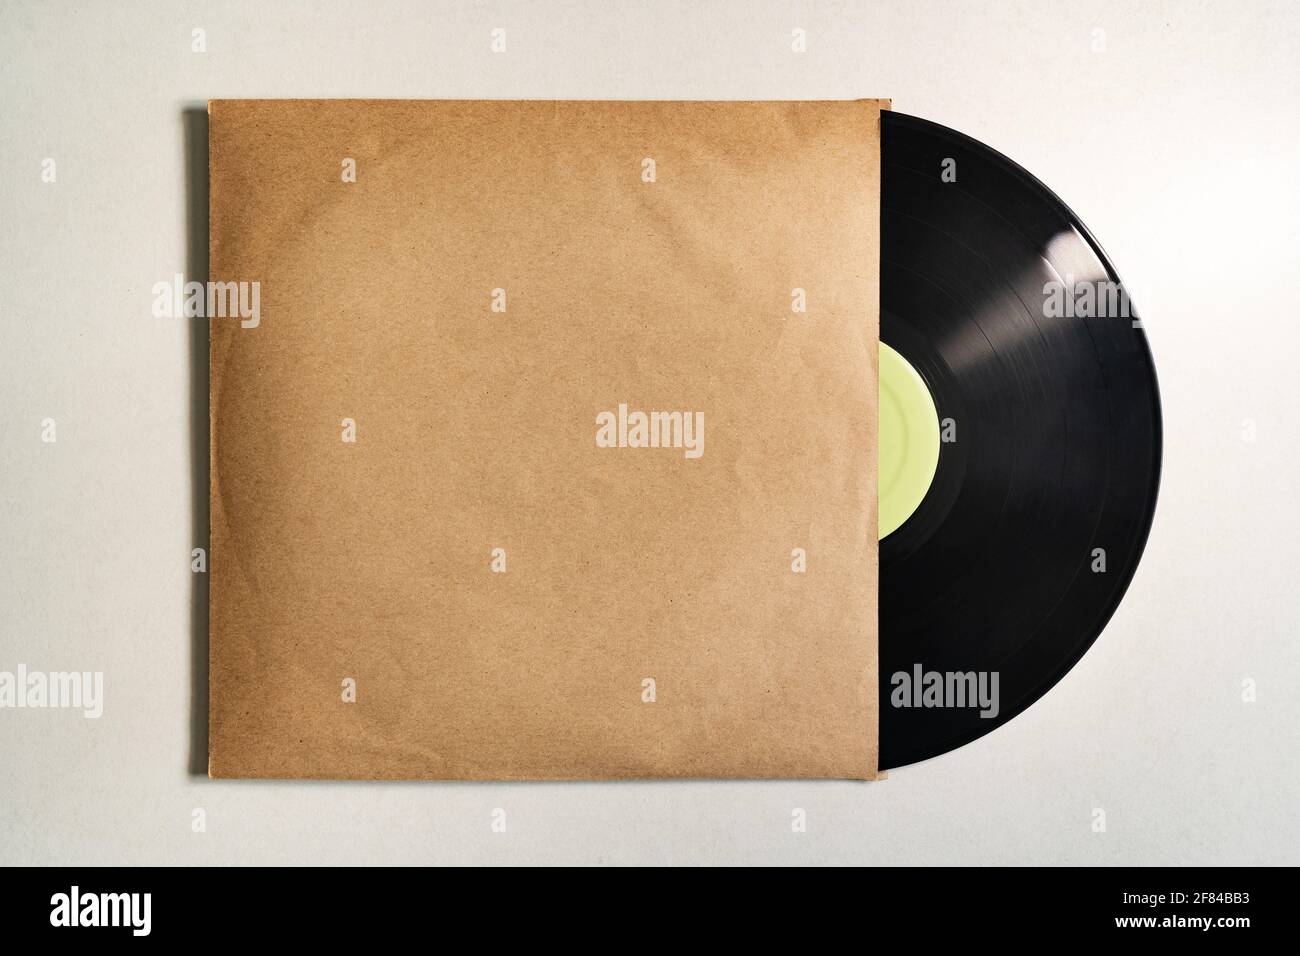 Disque vinyle dans un emballage à pochette en papier Photo Stock - Alamy